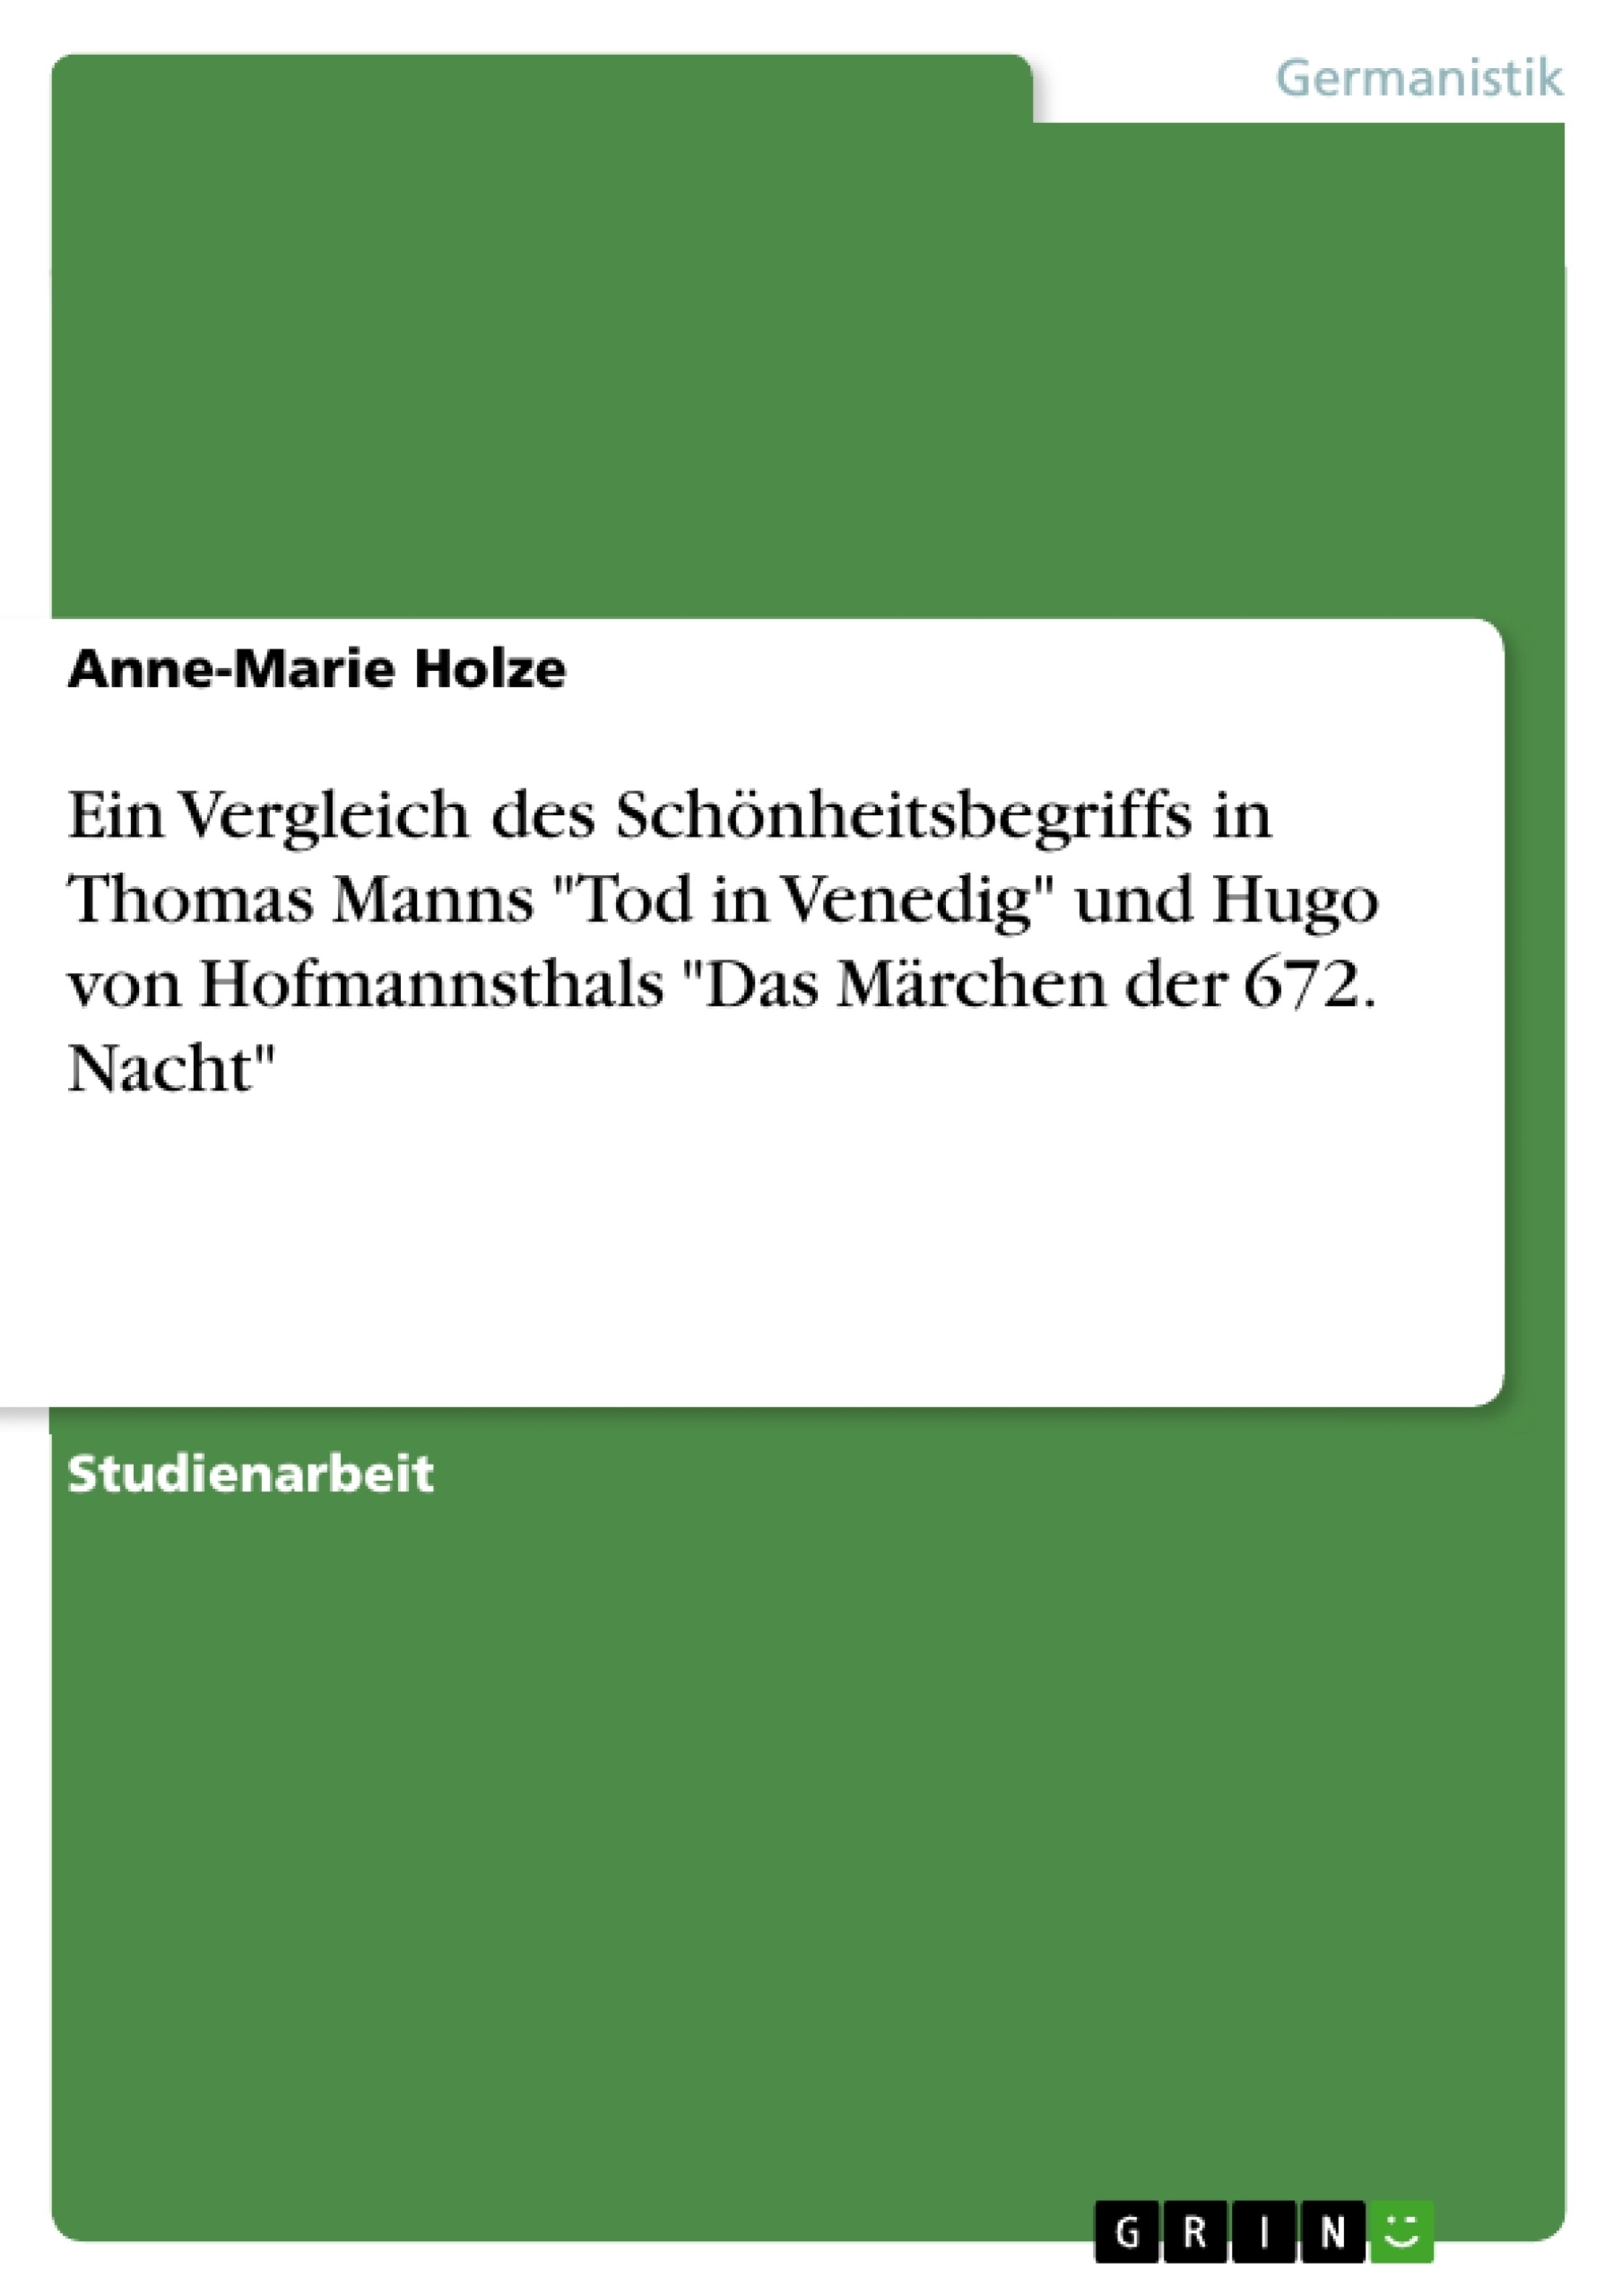 Titel: Ein Vergleich des Schönheitsbegriffs in Thomas Manns "Tod in Venedig" und Hugo von Hofmannsthals "Das Märchen der 672. Nacht"